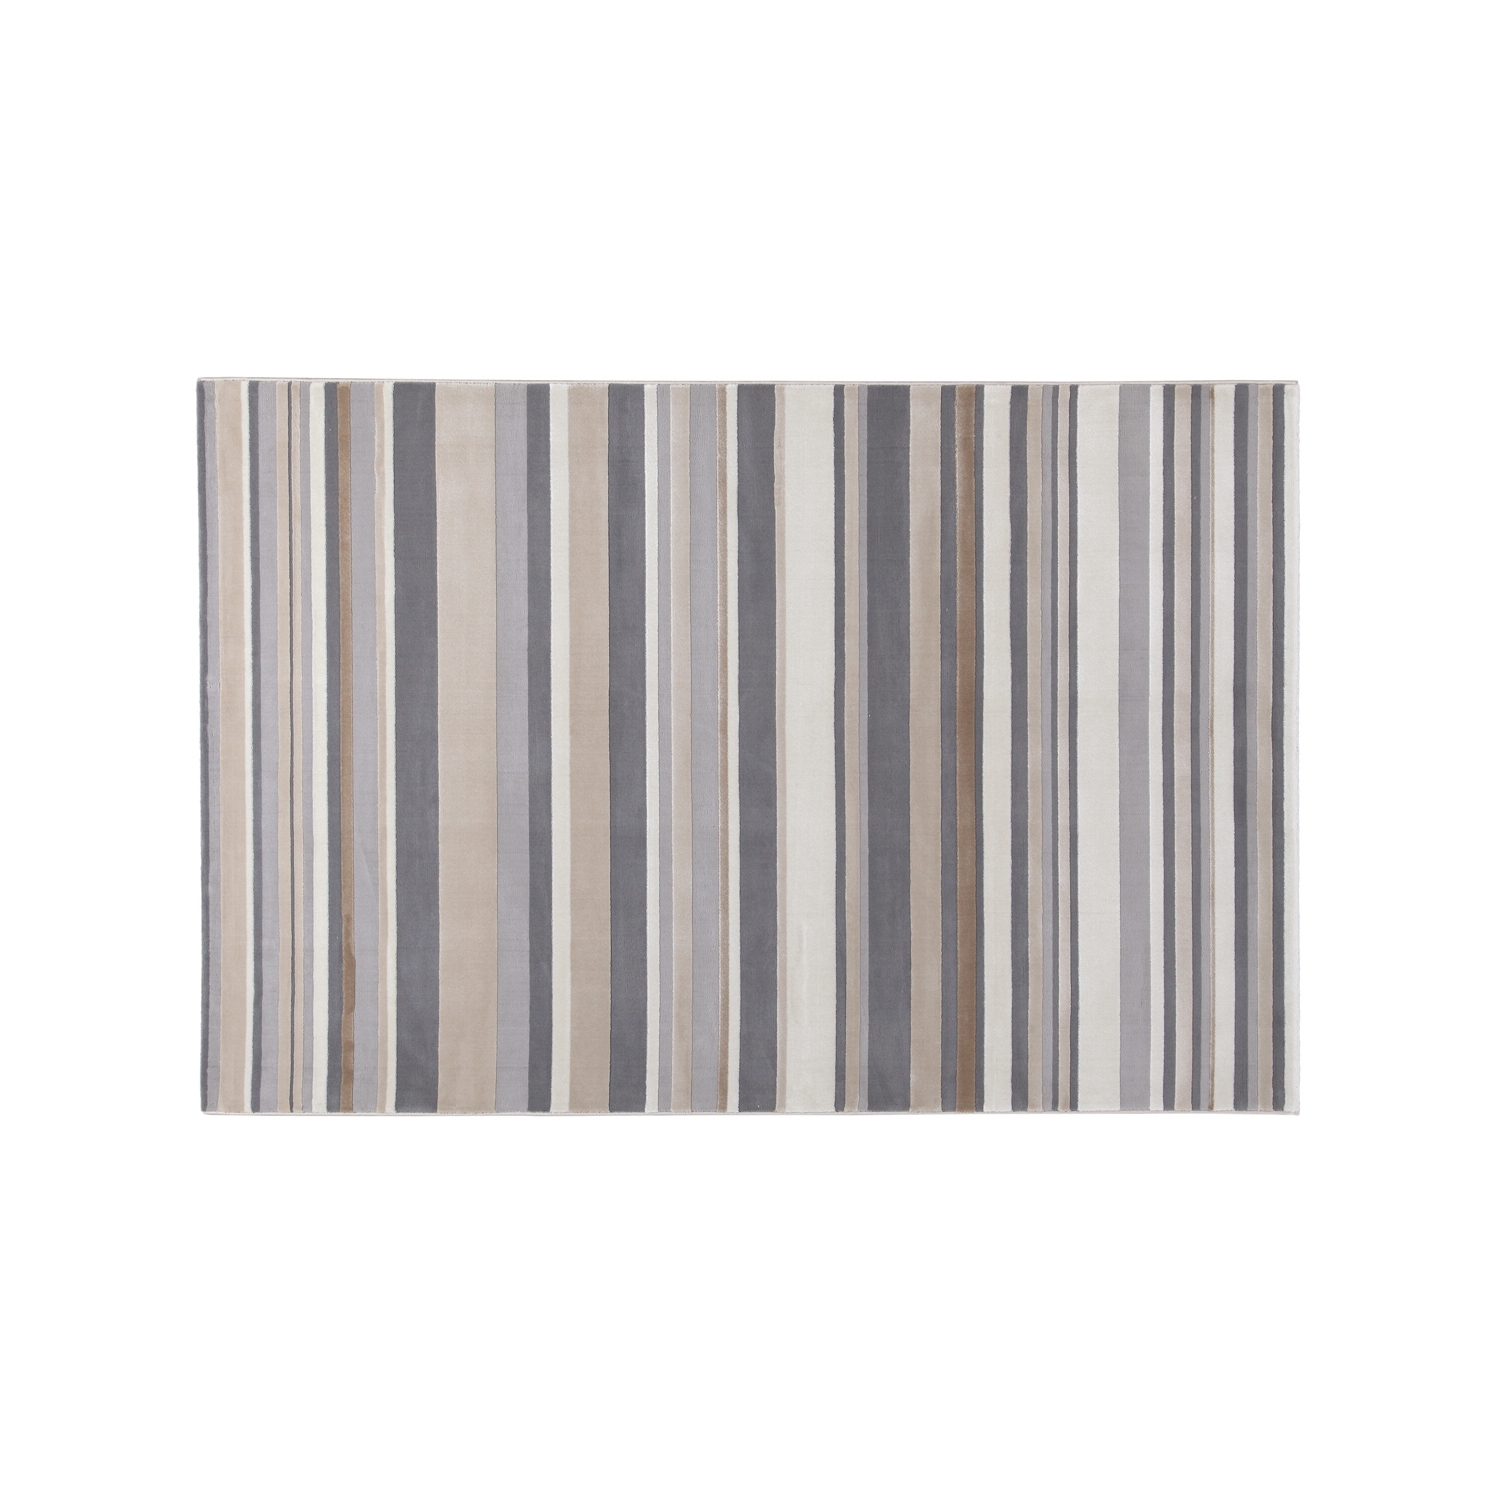 altri brand tappeto grigio vintage righe 150x80 cm step donna